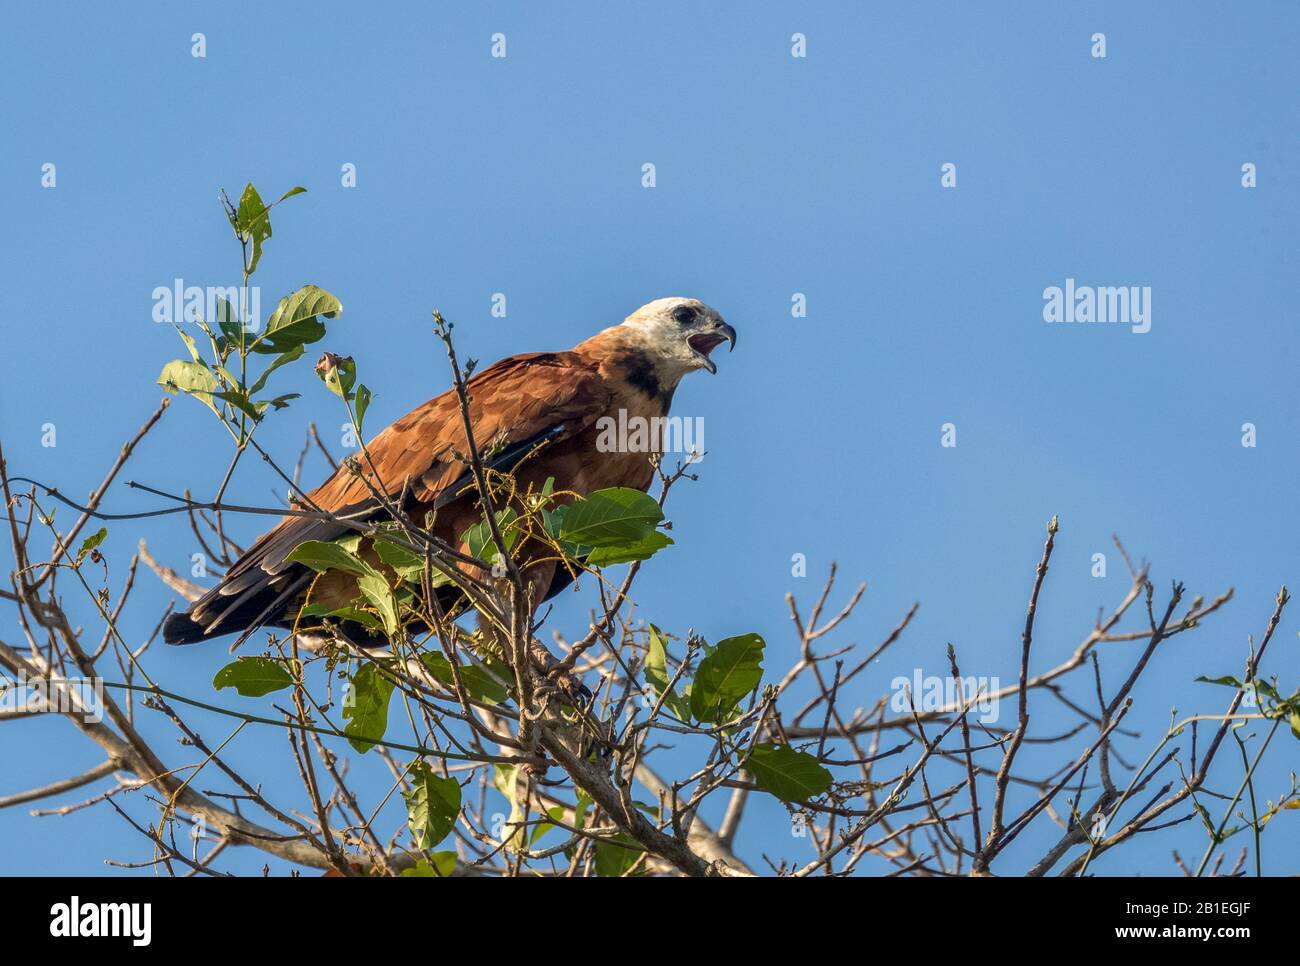 Black-collared Hawk (Busarellus nigricollis), on a branch, Pantanal area, Mato Grosso, Brazil Stock Photo